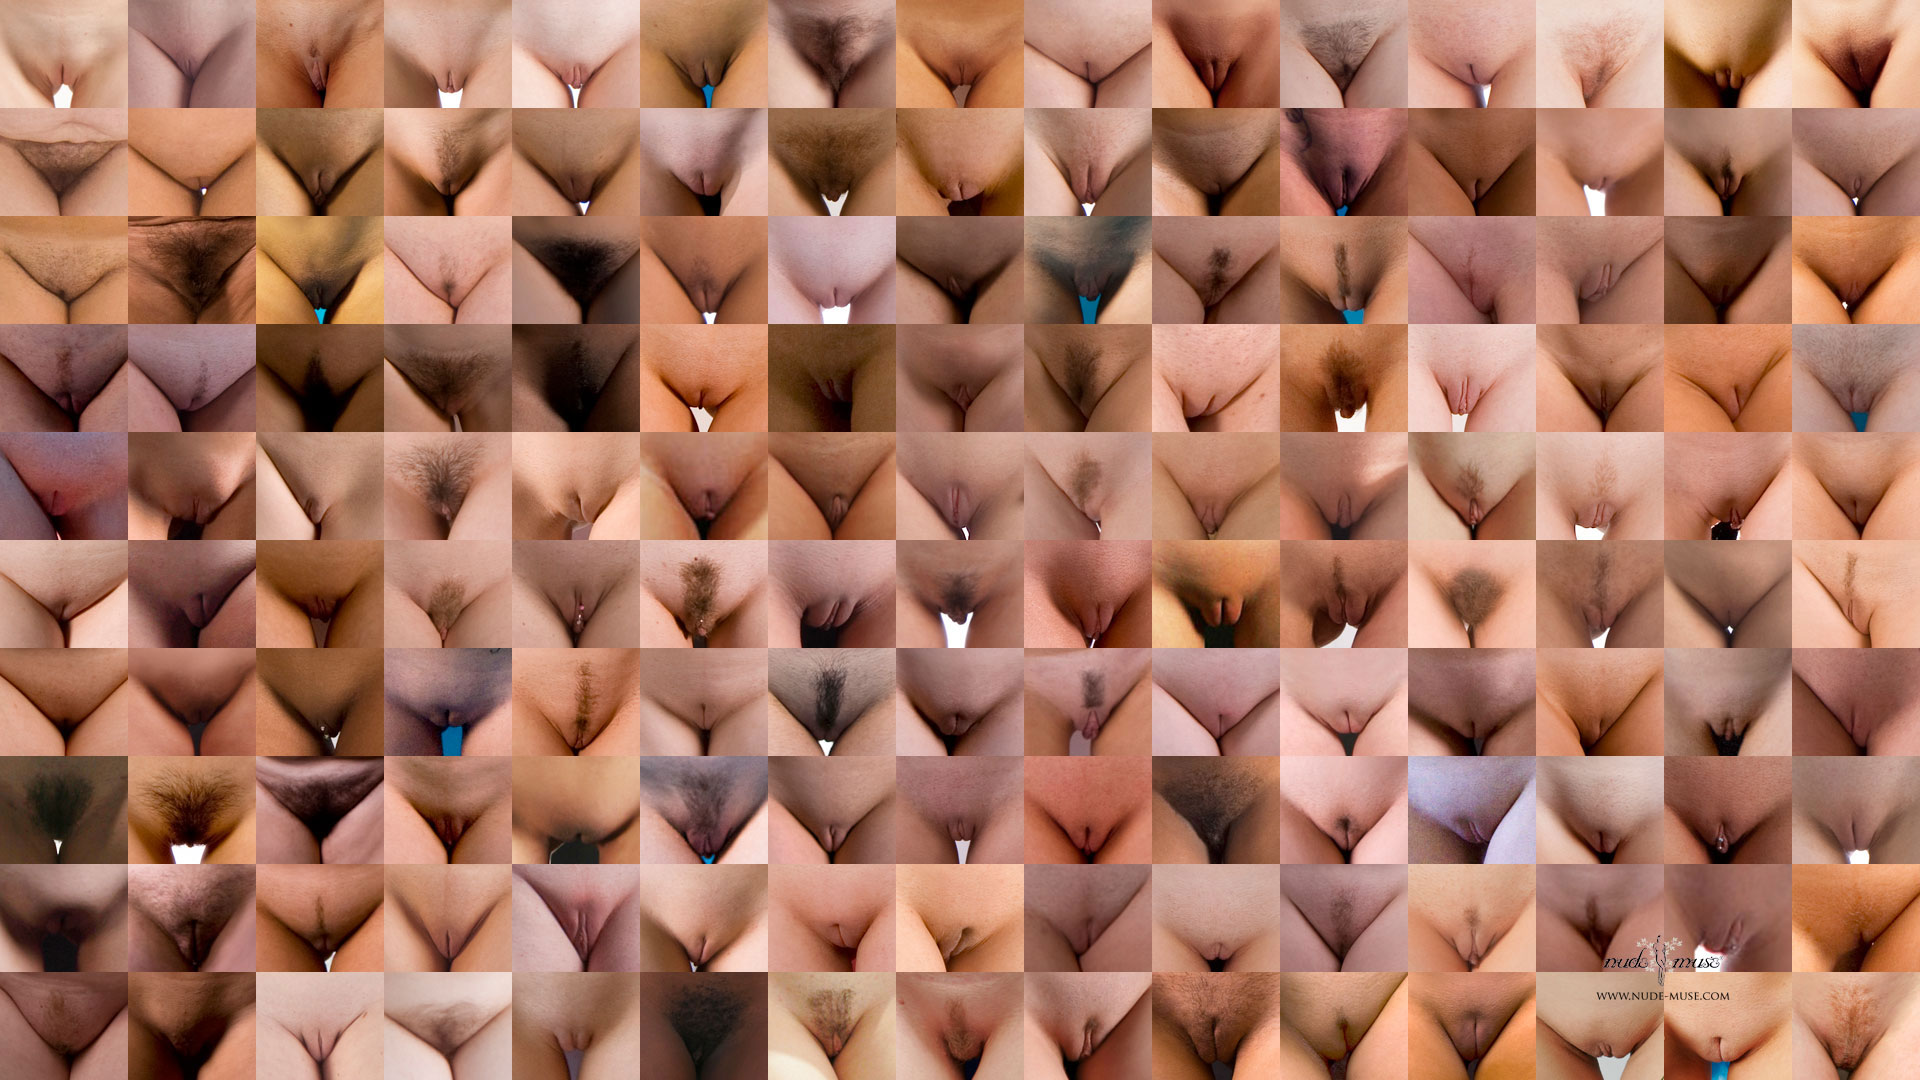 Разновидности женских половых органов фото